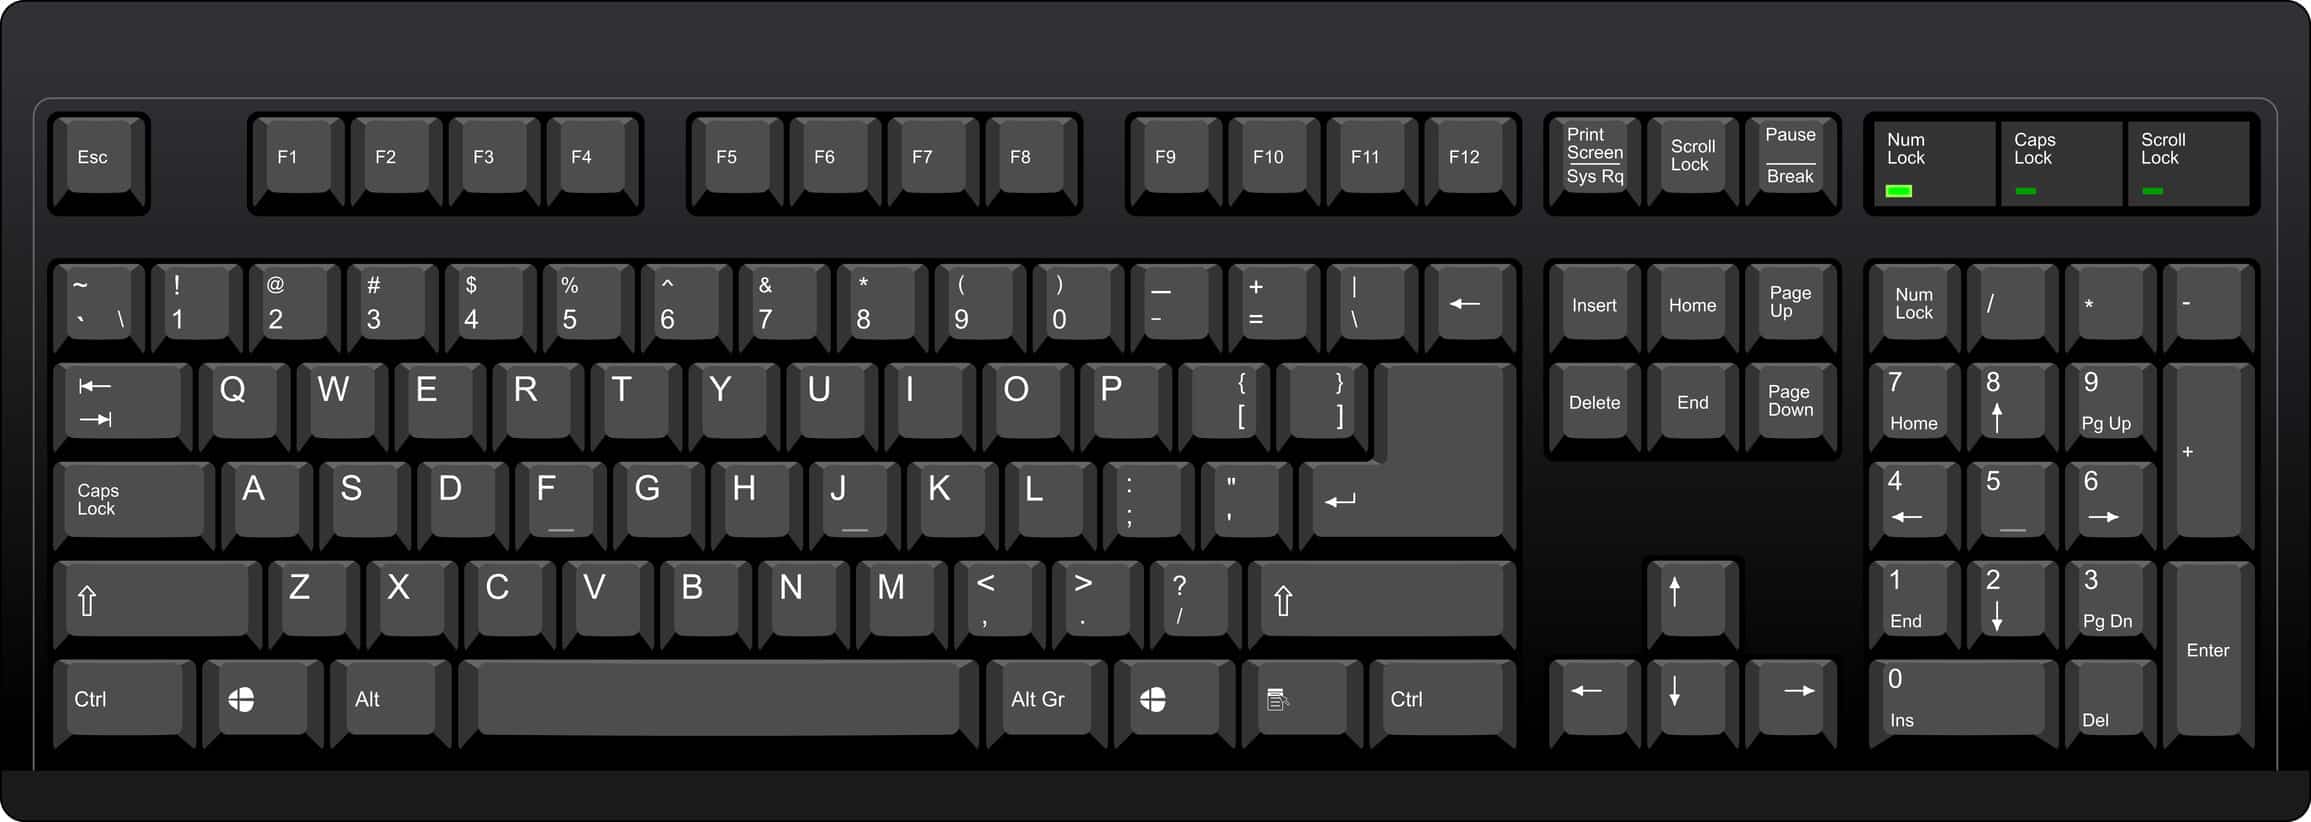 qwerty keyboard layout